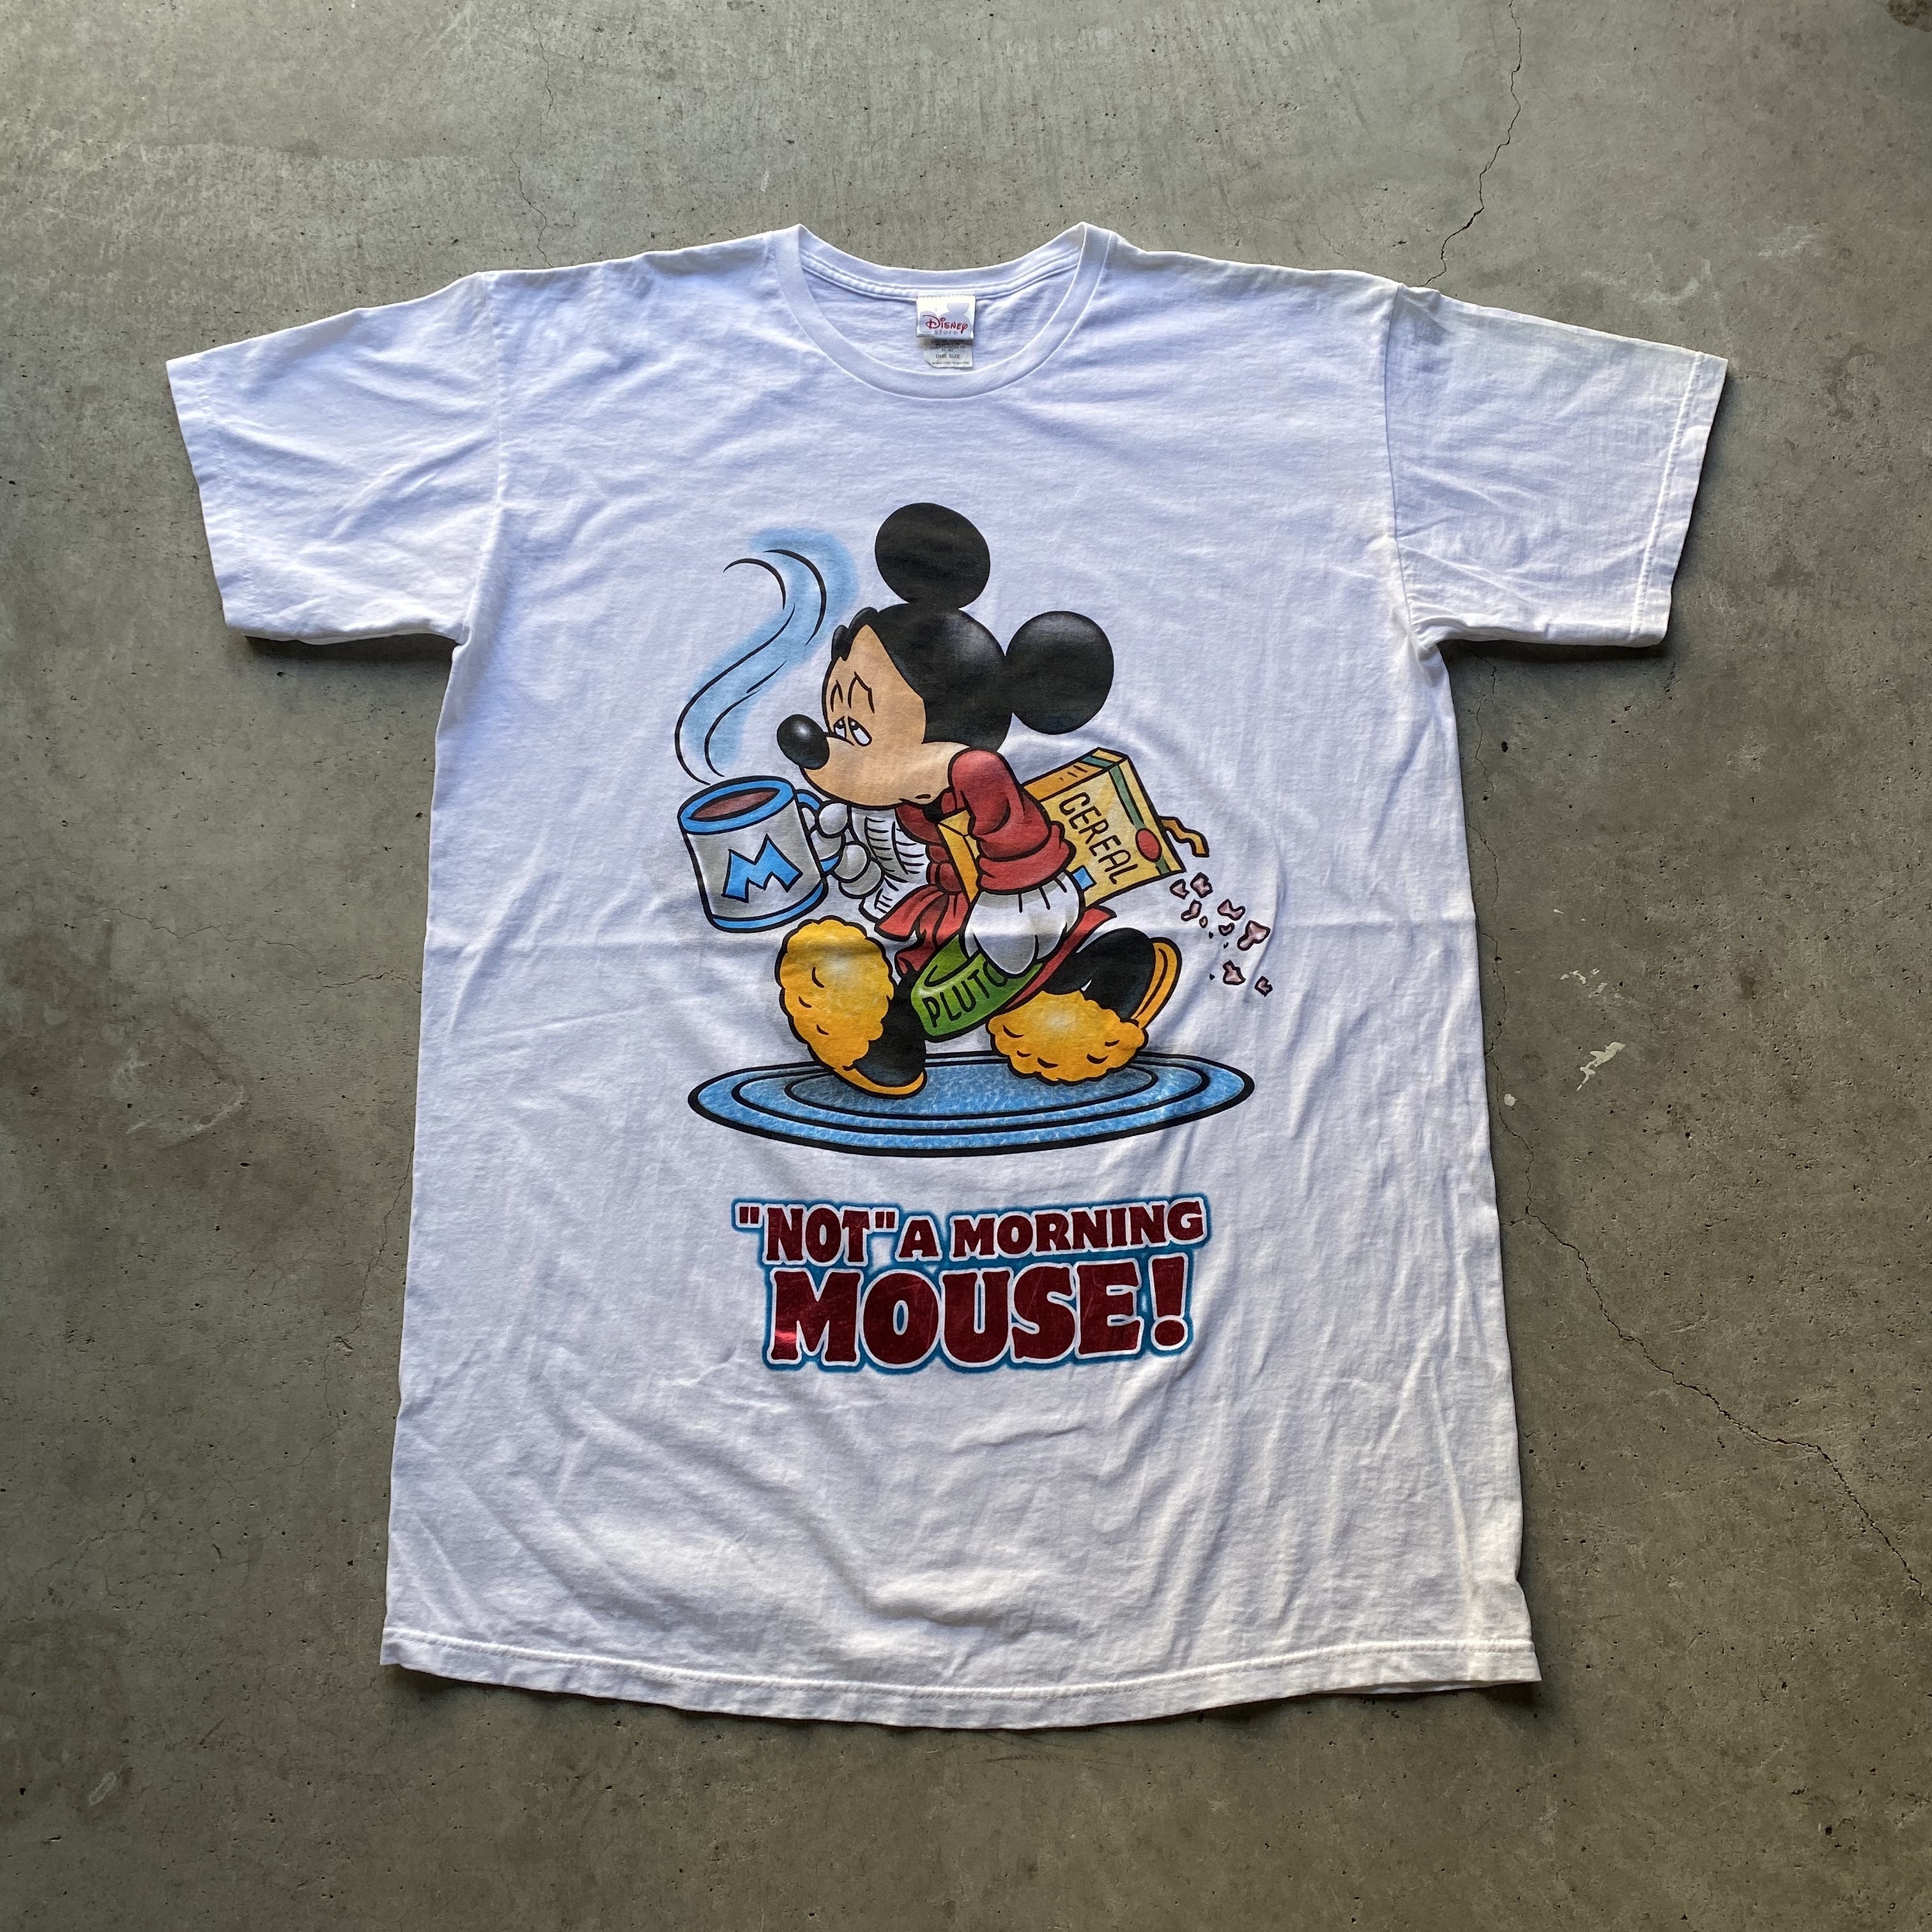 Disney ディズニー Mickey Mouse ミッキーマウス キャラクターtシャツ メンズ レディース 古着 Tシャツ Cave 古着屋 公式 古着通販サイト